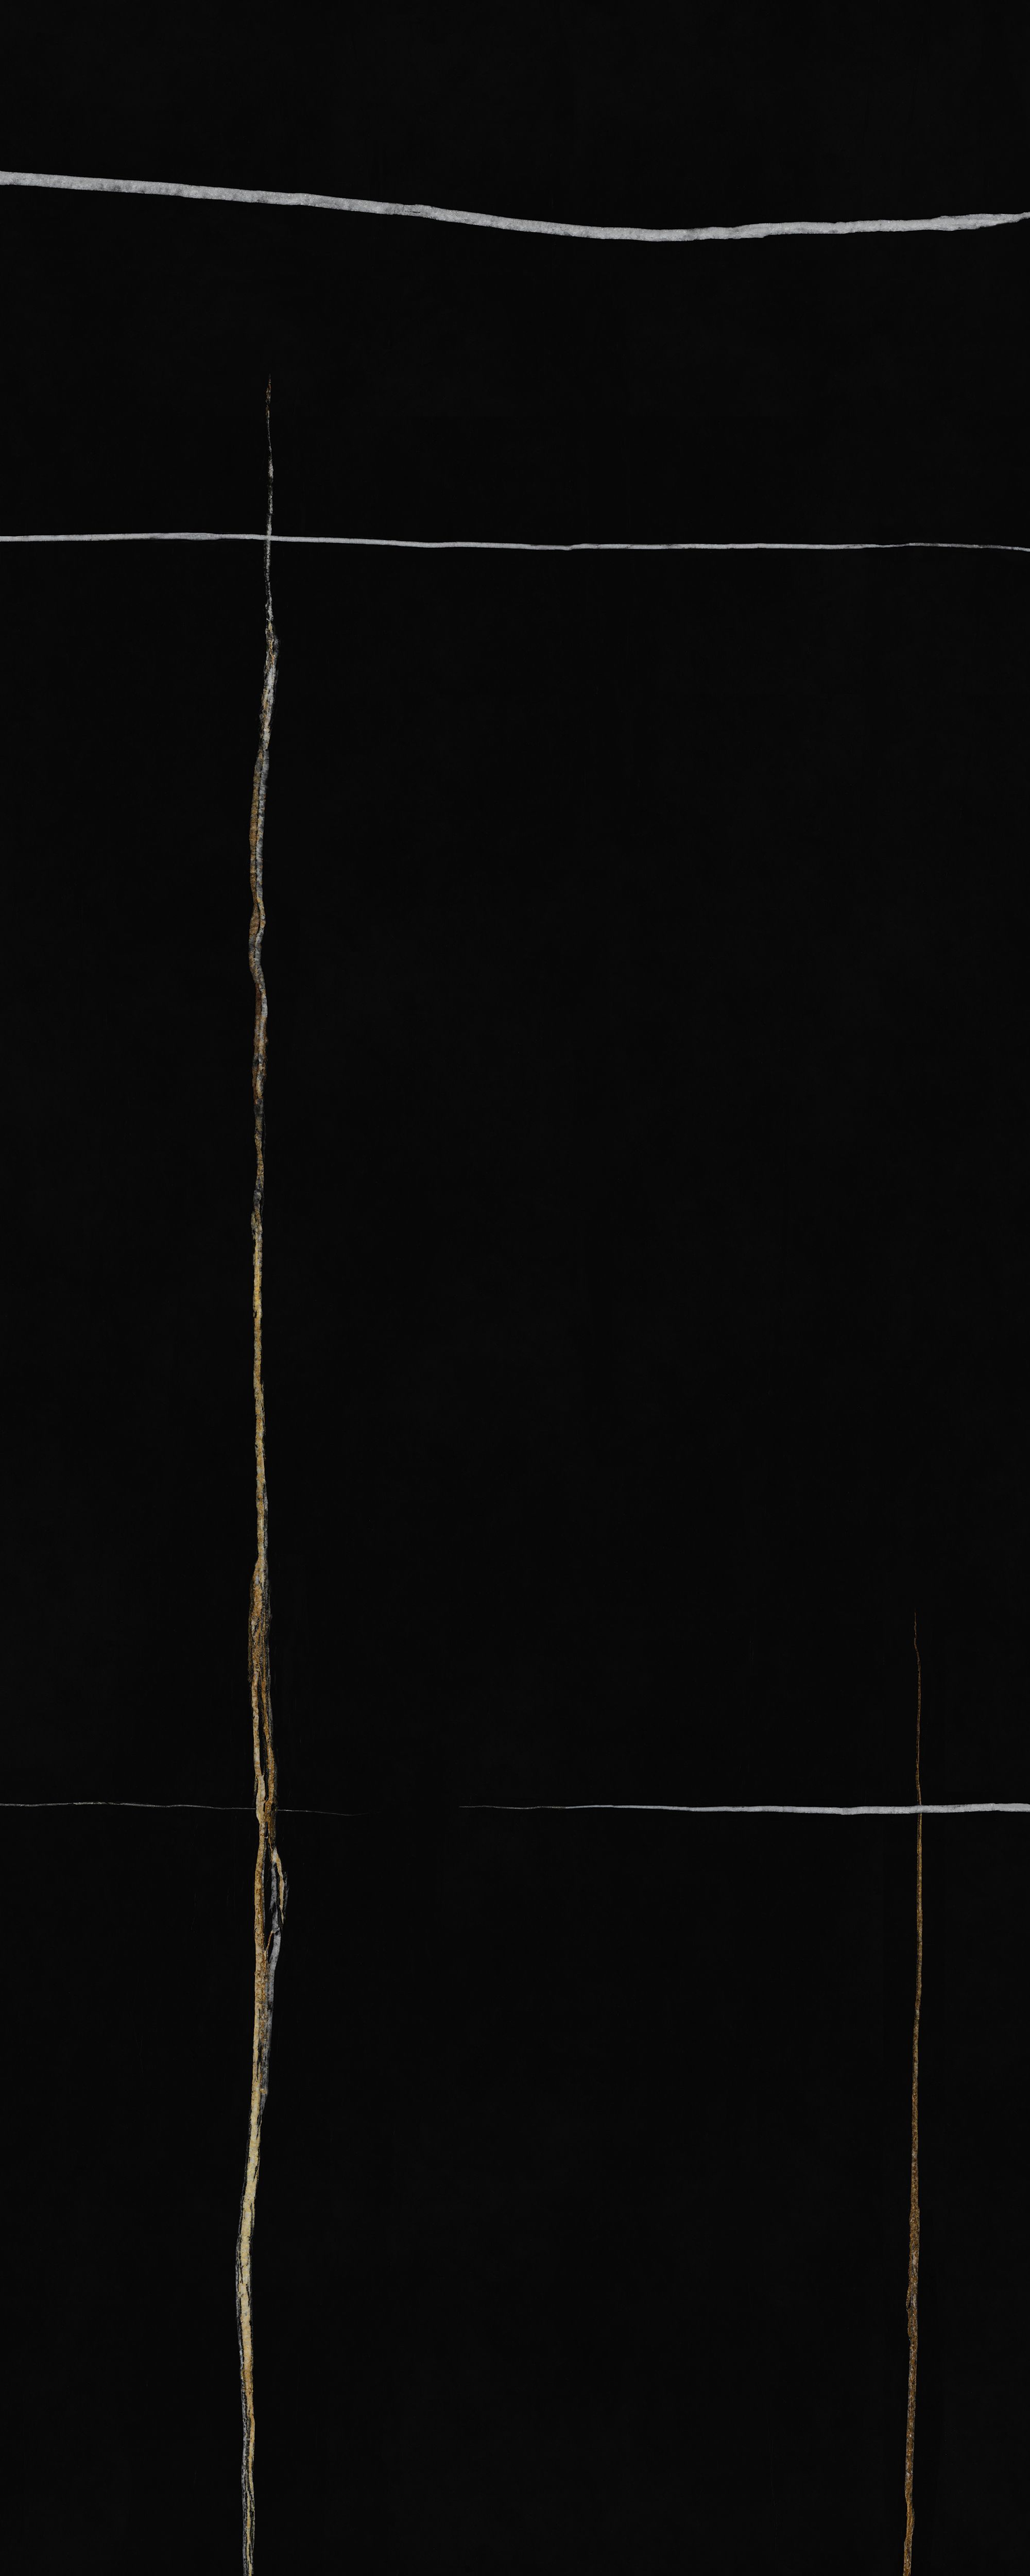 Интерьерная панель Sahara Noir NT-47.1.1 Cord глянцевый